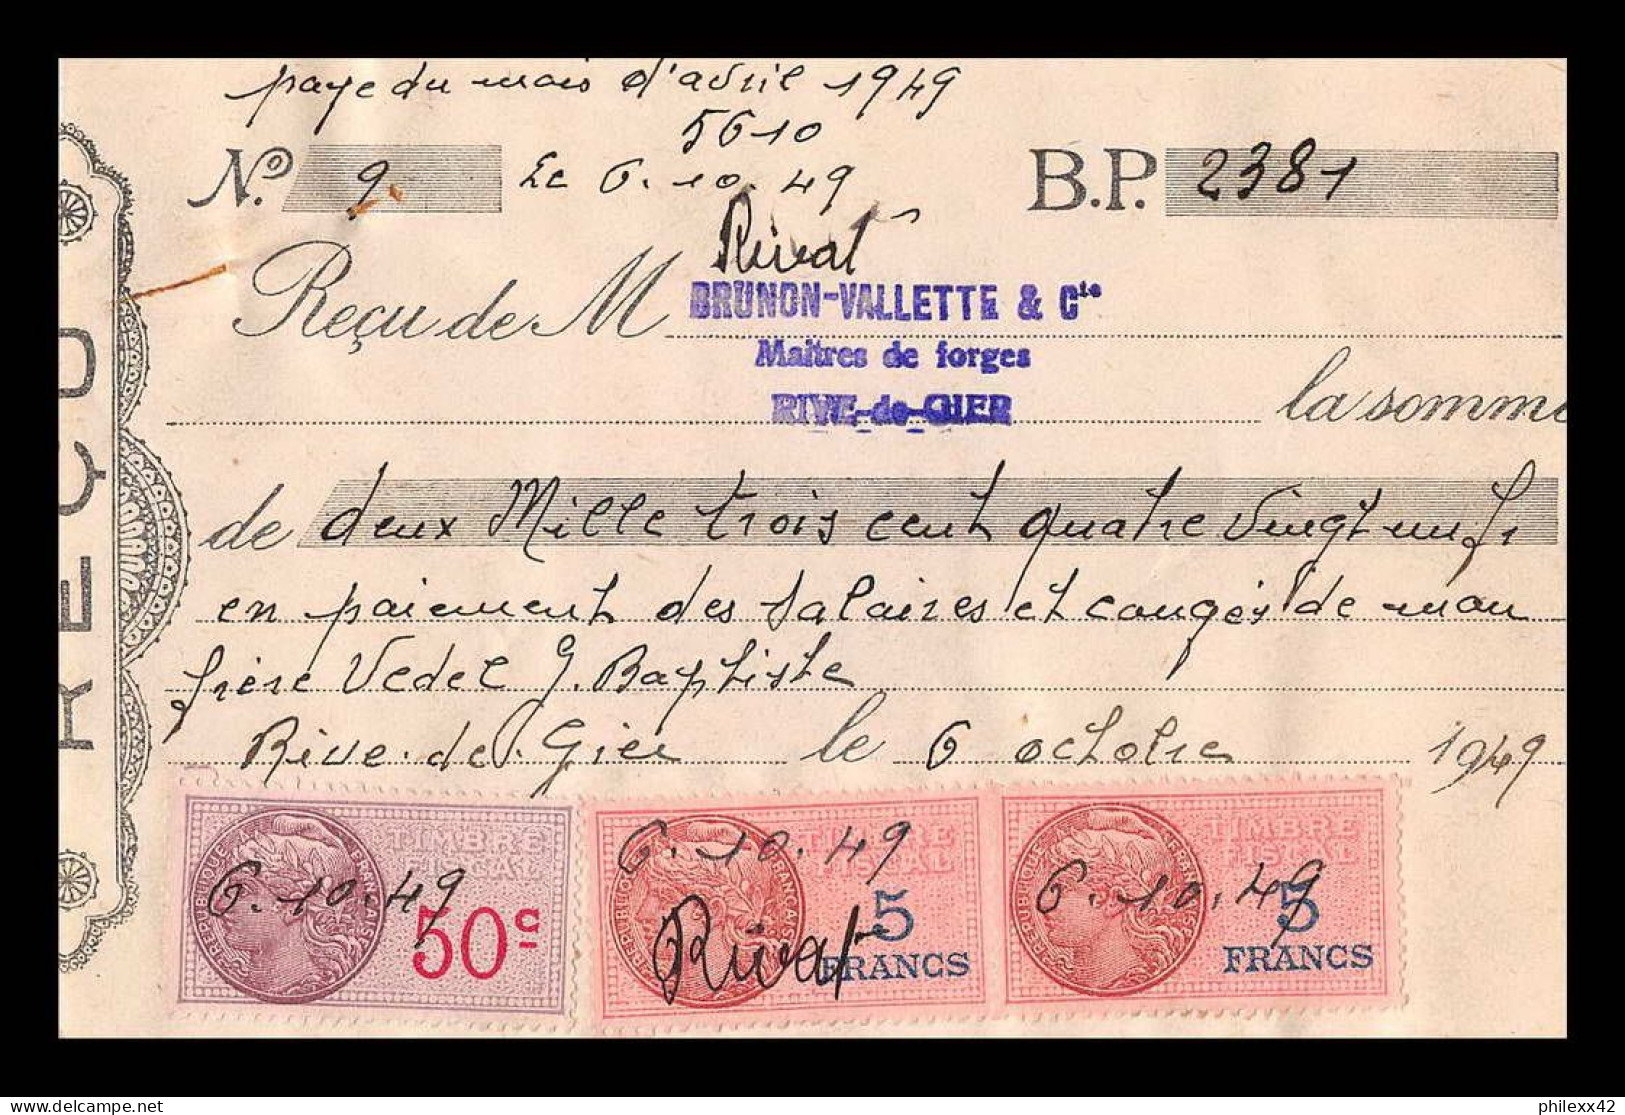 12961 Lettre Taxée Brunon Valette Maitre Forge Rive De Gier Loire 1949 Timbre Fiscal Fiscaux Sur Document France - Storia Postale